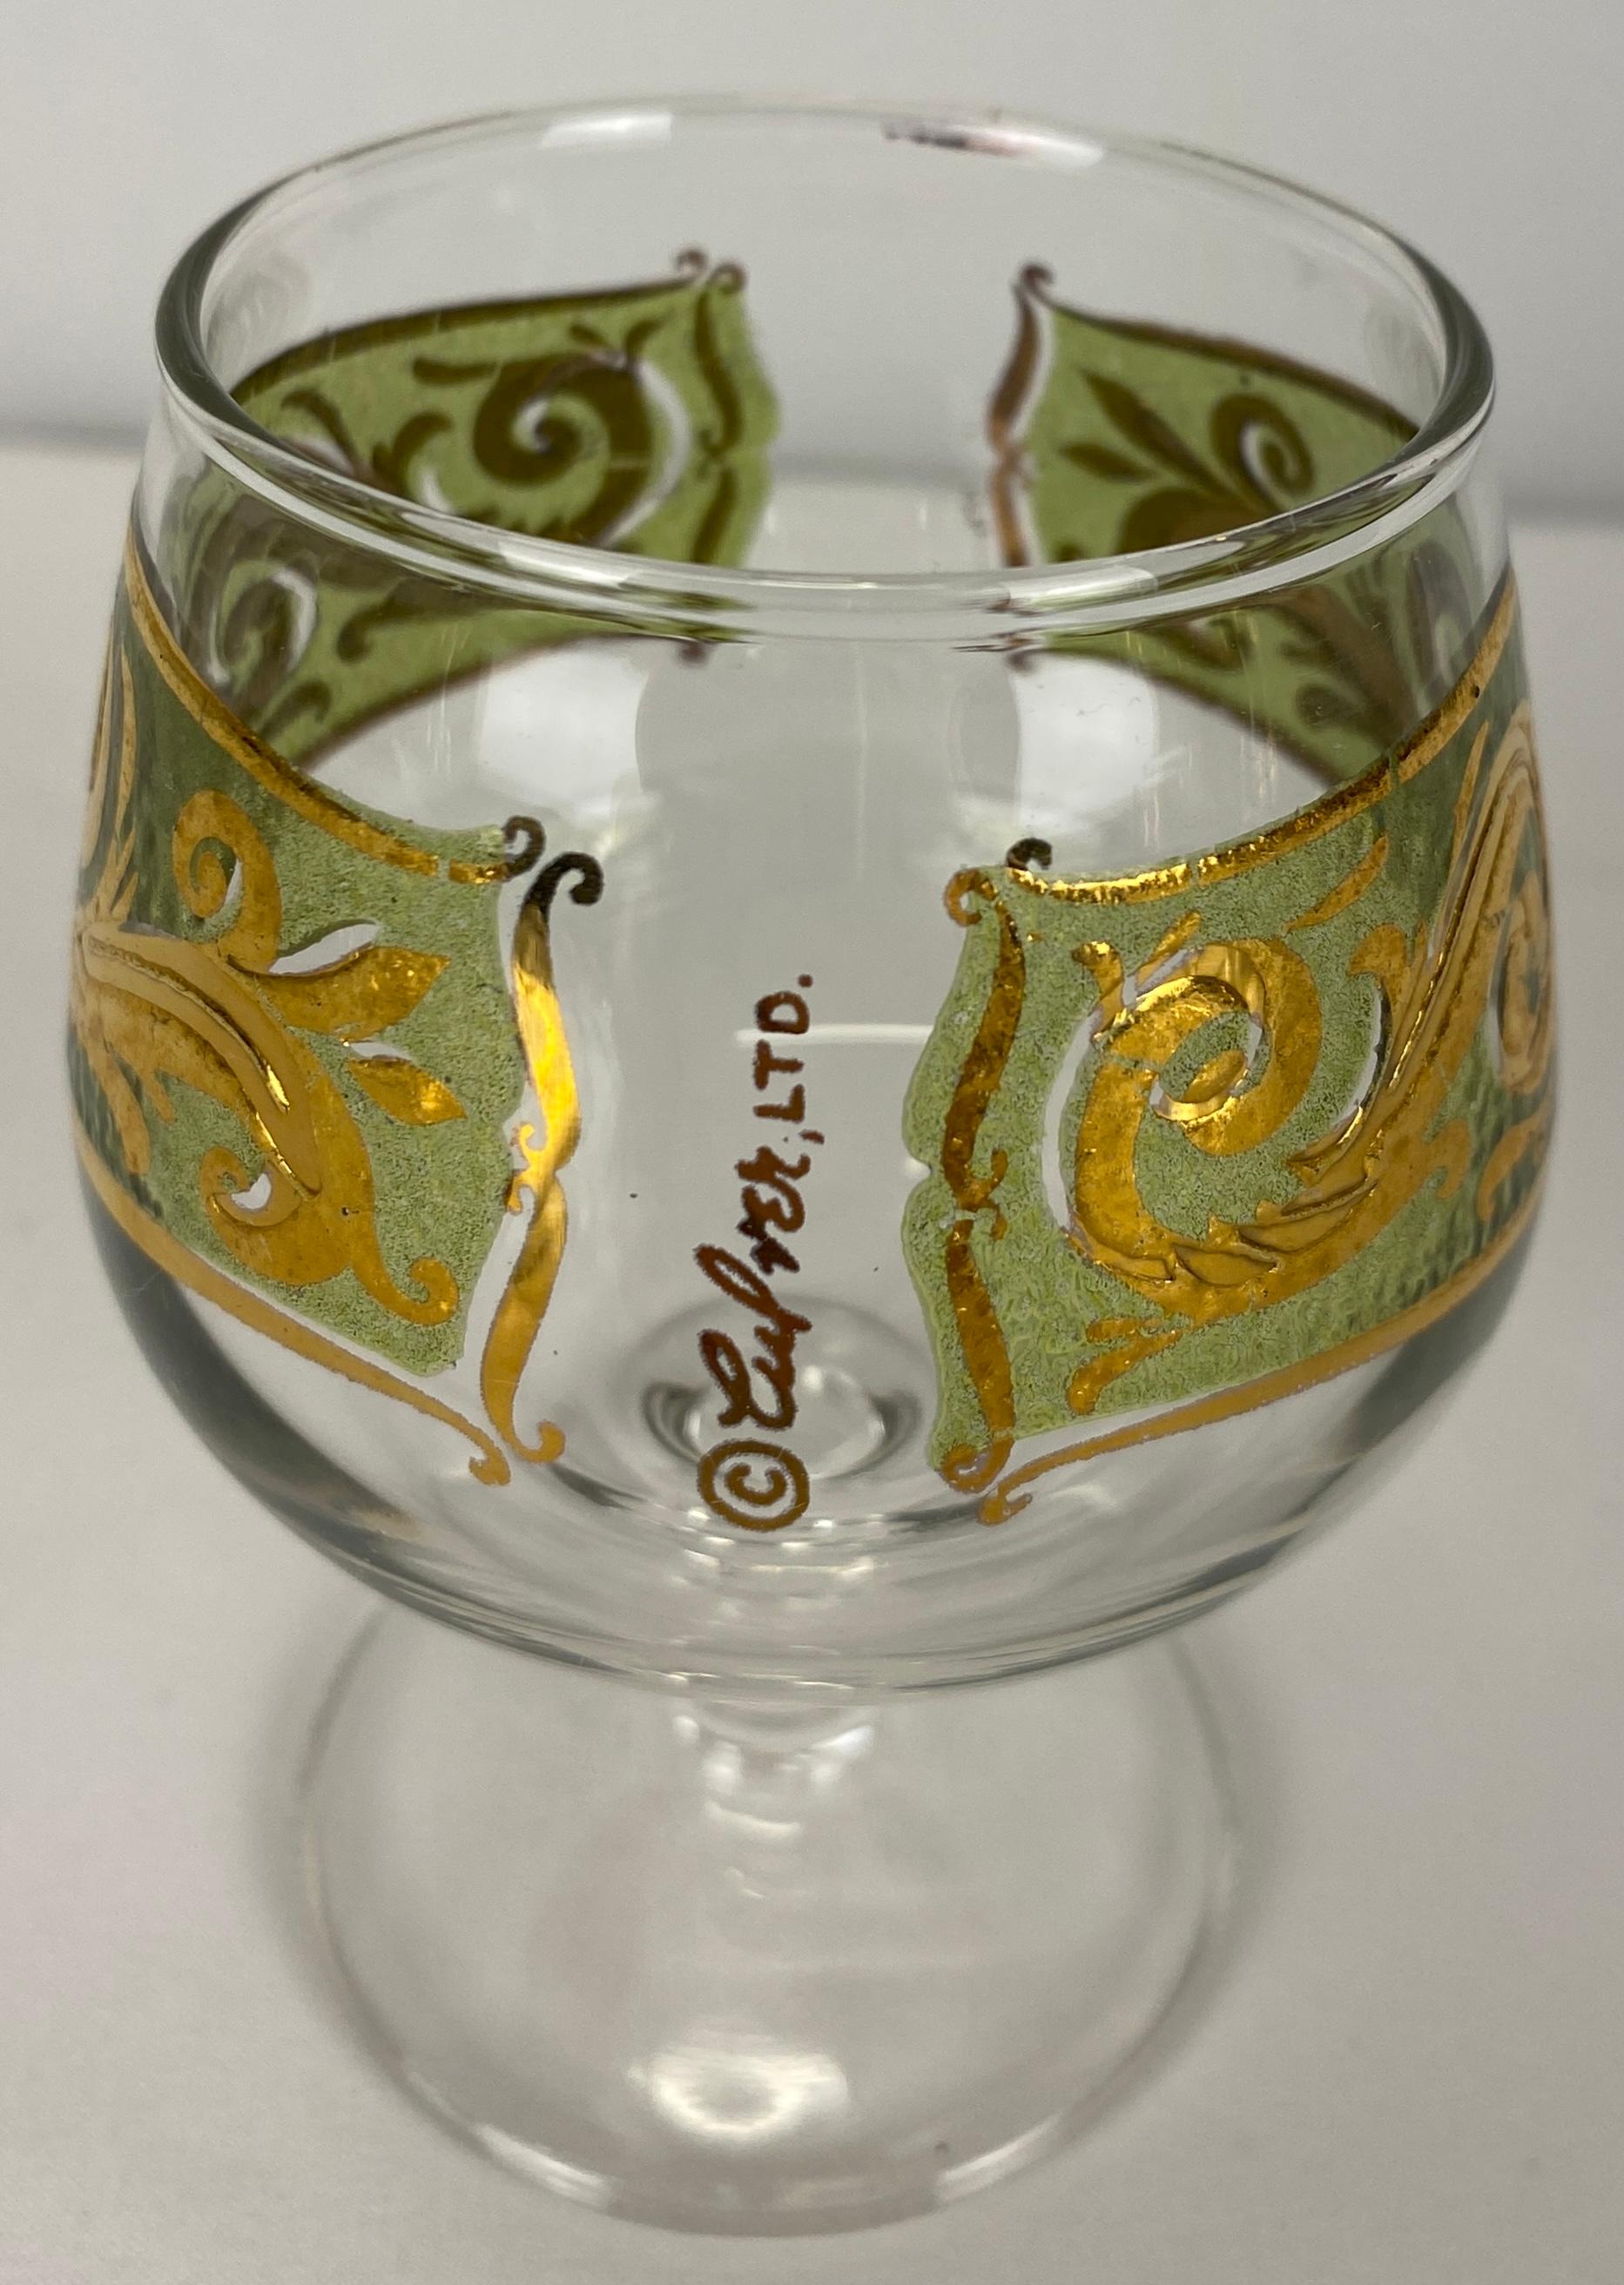 Exquisiter Satz von 8 Culver-Gläsern.  Wunderschönes marokkanisches Design mit 22-karätigem Gold, perfekt zum Servieren von Hors D'Oeuvres.

Diese hochverzierten Culver-Gläser zeichnen sich durch ein filigranes Design aus 22-karätigem Gold mit